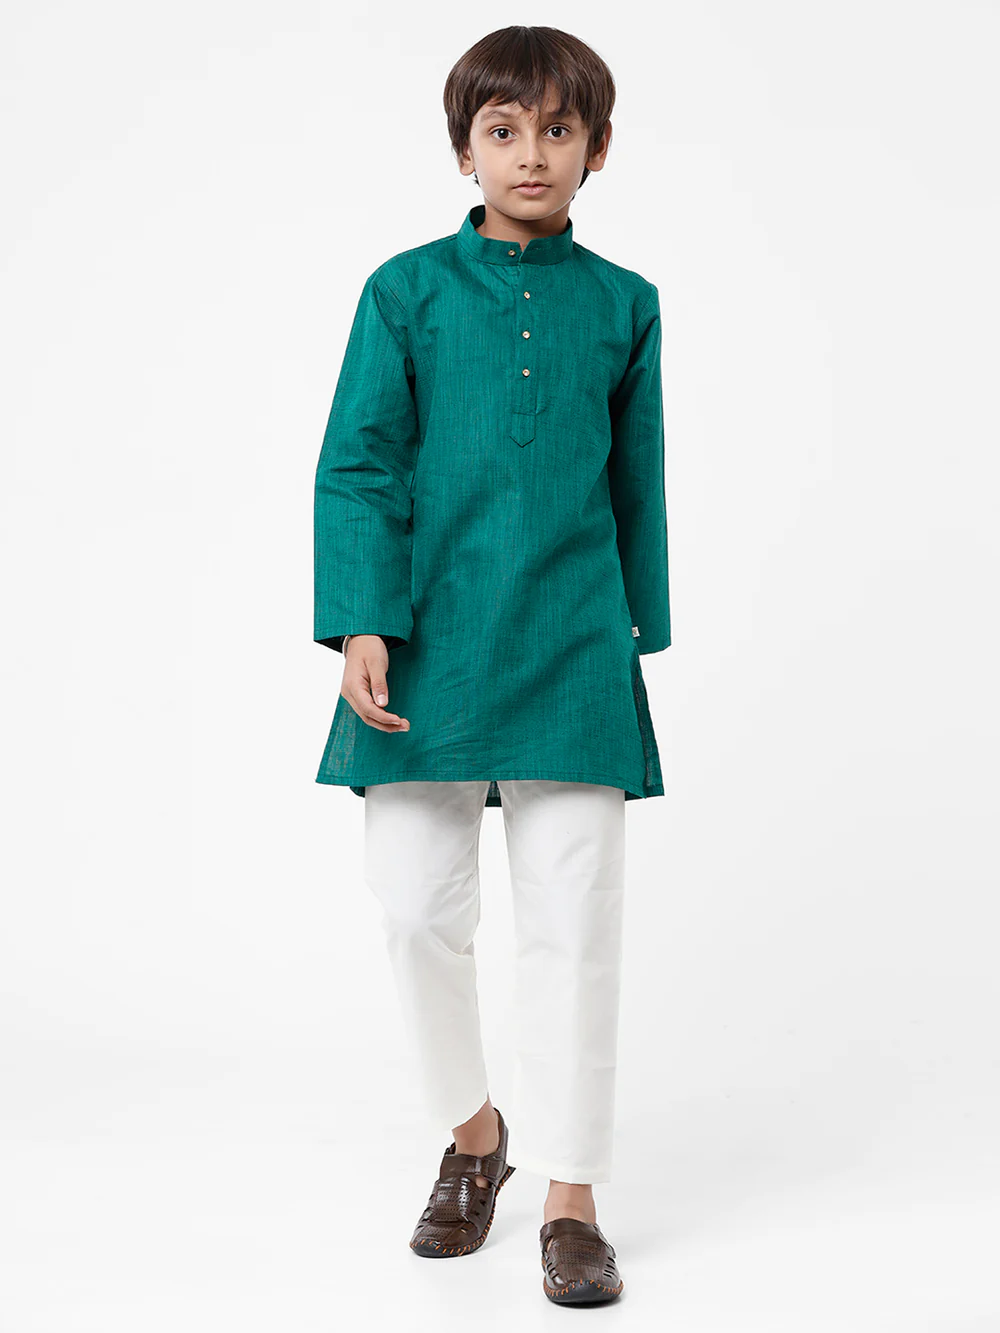 Ramraj Boys Kurta Pyjama Set - Daily Needs Products